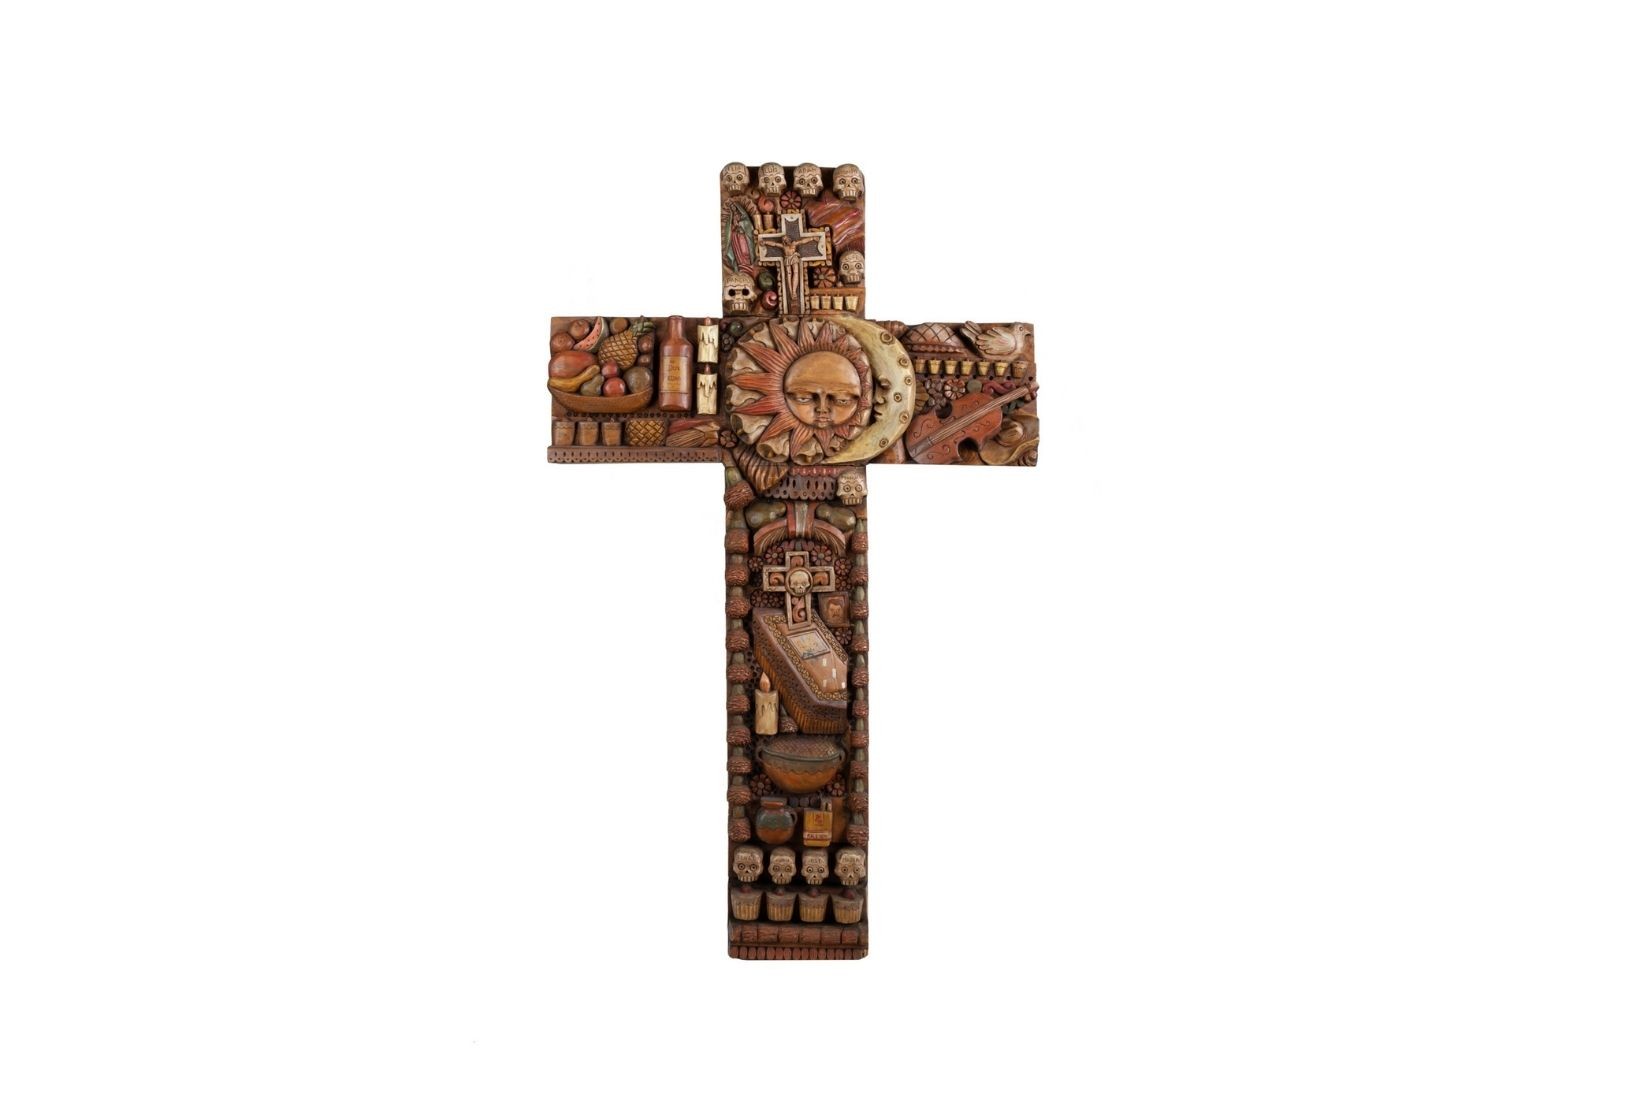 Cruz de altar de madera de sabino tallada y policromada. Artesano Gustavo Mandujano Servín. Apaseo el Alto, Gto. 1998. Col. Part. (Foto: EKV).